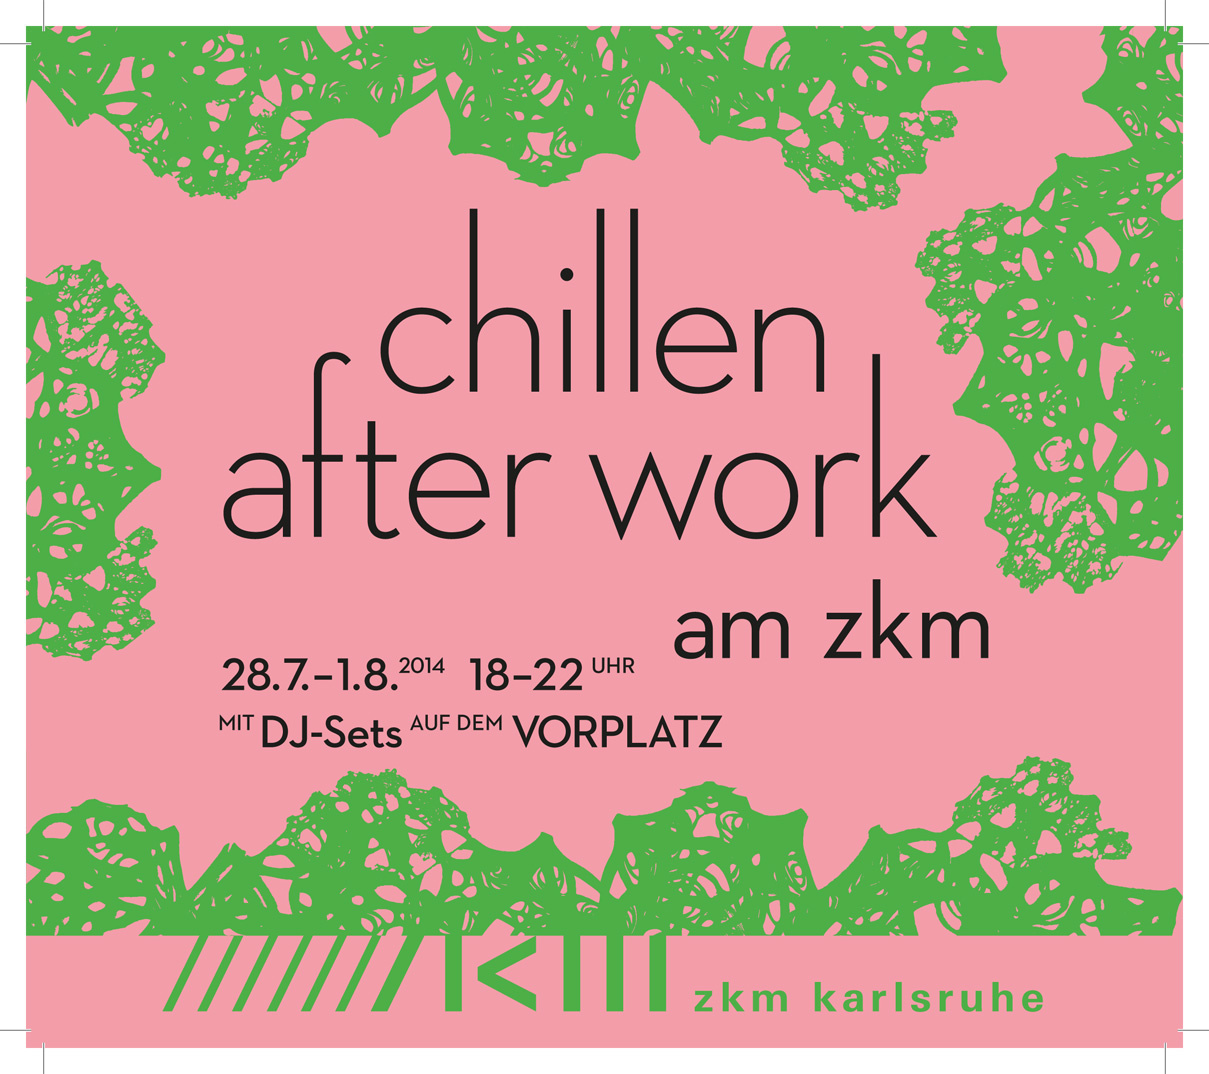 Plakat zu "Chillen after work" am ZKM. Schwarze Schrift auf lachsfarbenem Grund mit grün gemusterten Rändern.  